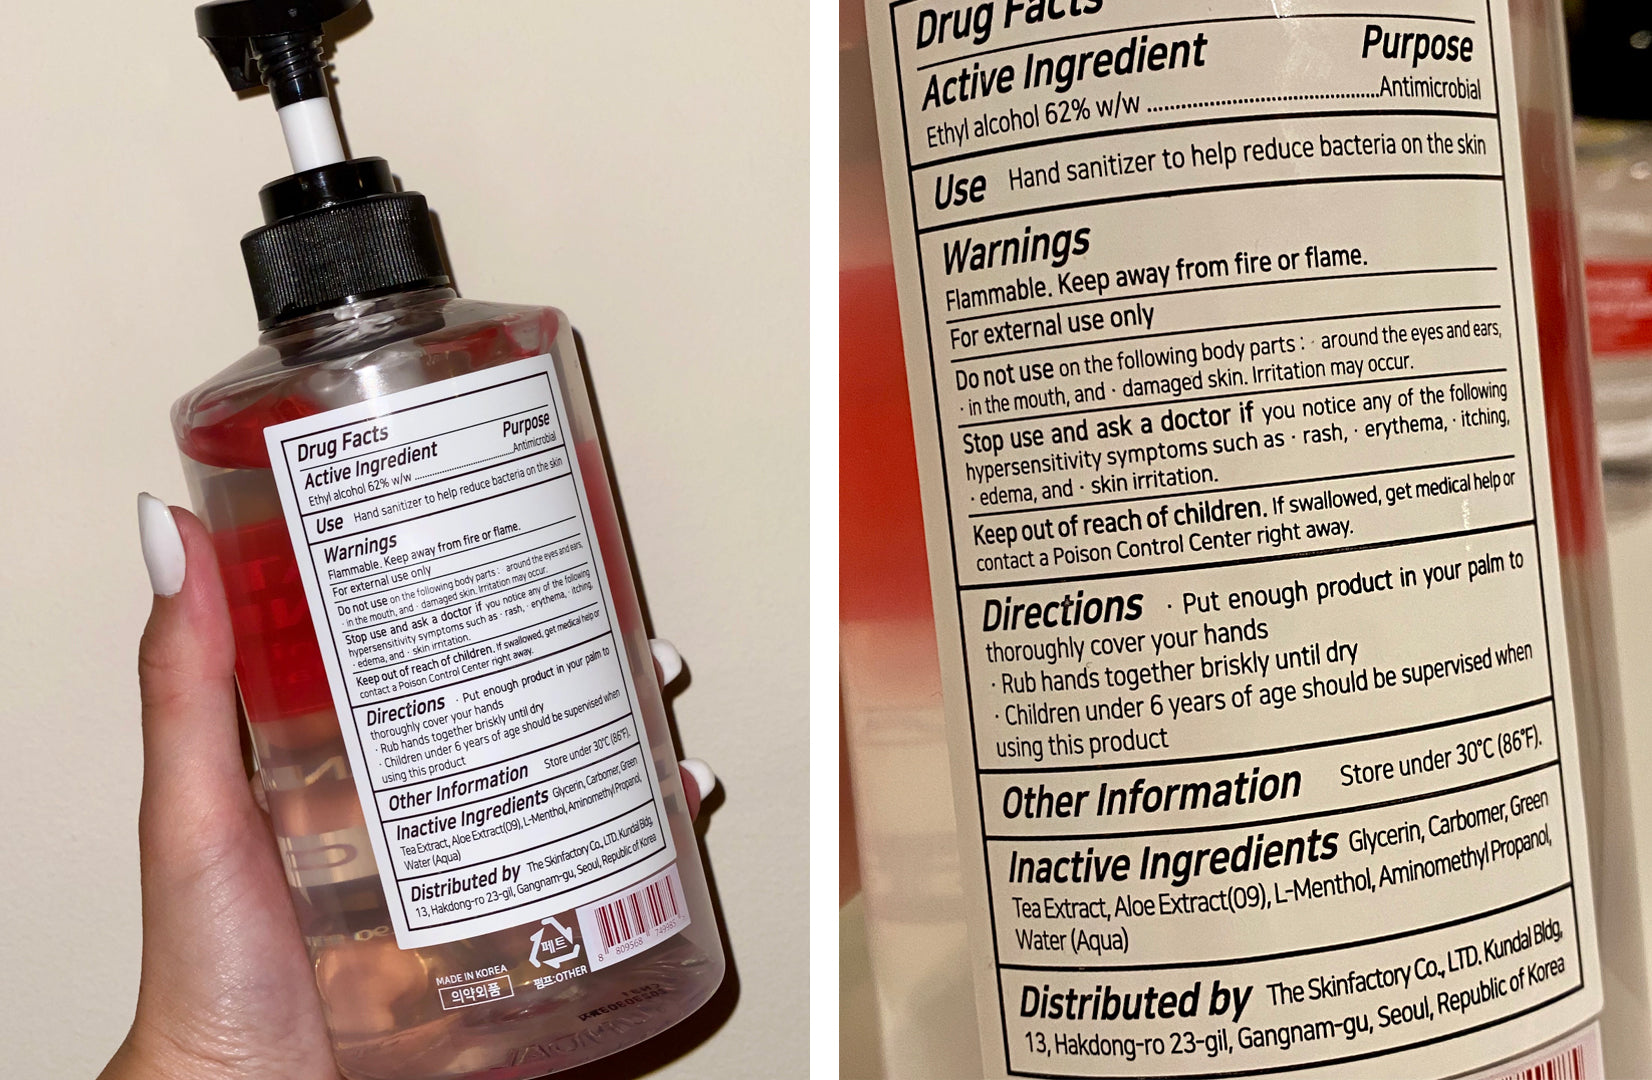 safe sanitizer ingredients with no methanol